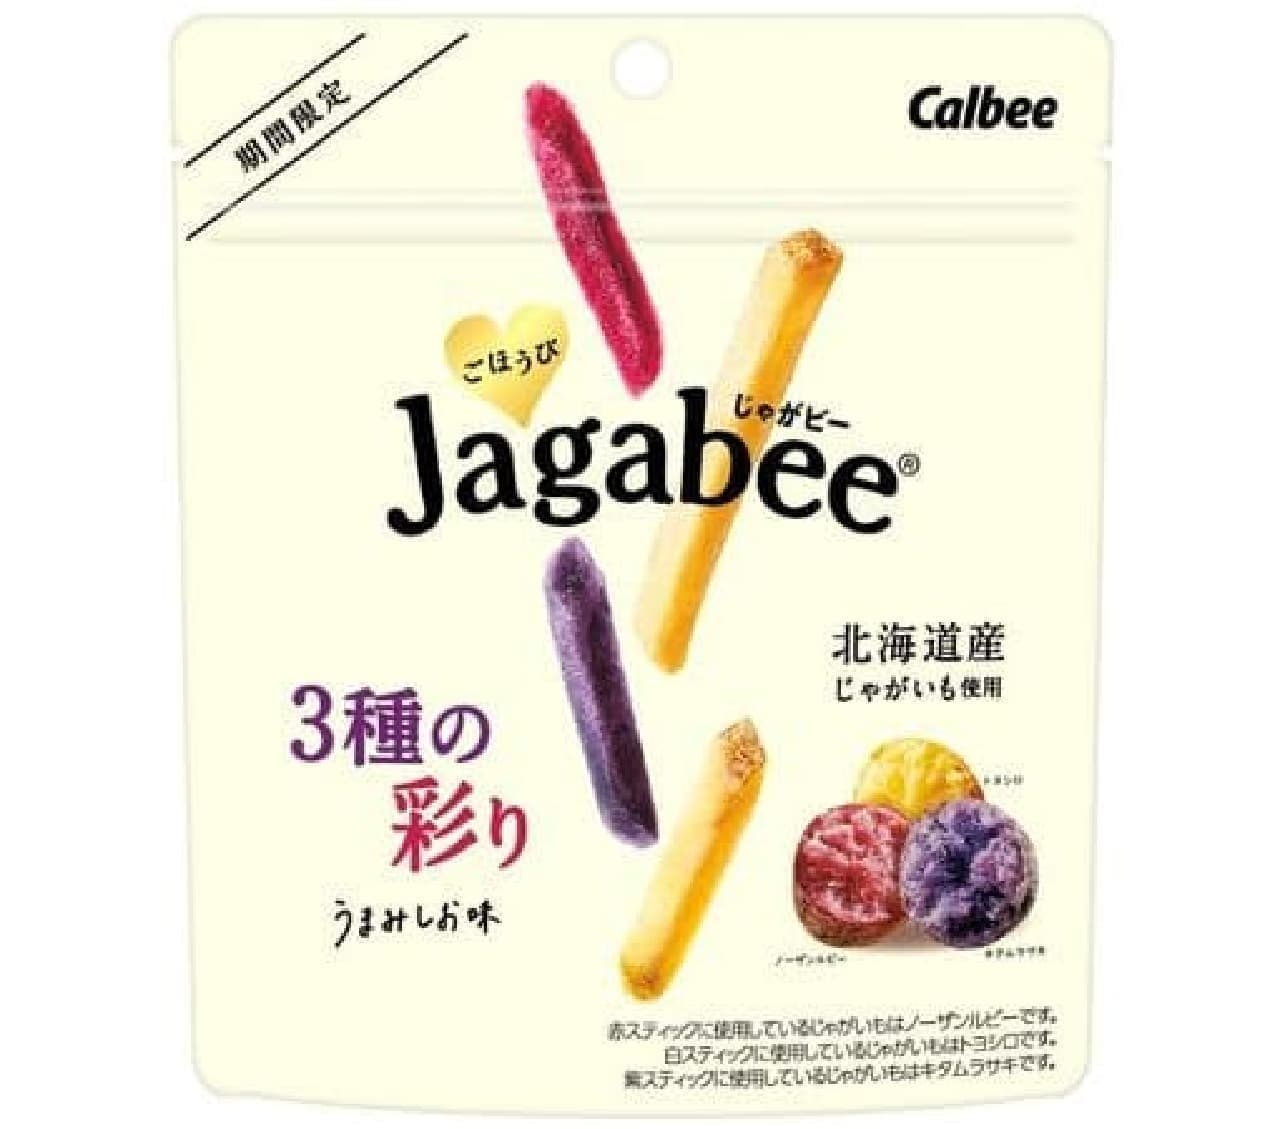 カルビー「ごほうびJagabee 3種の彩りうまみしお味」